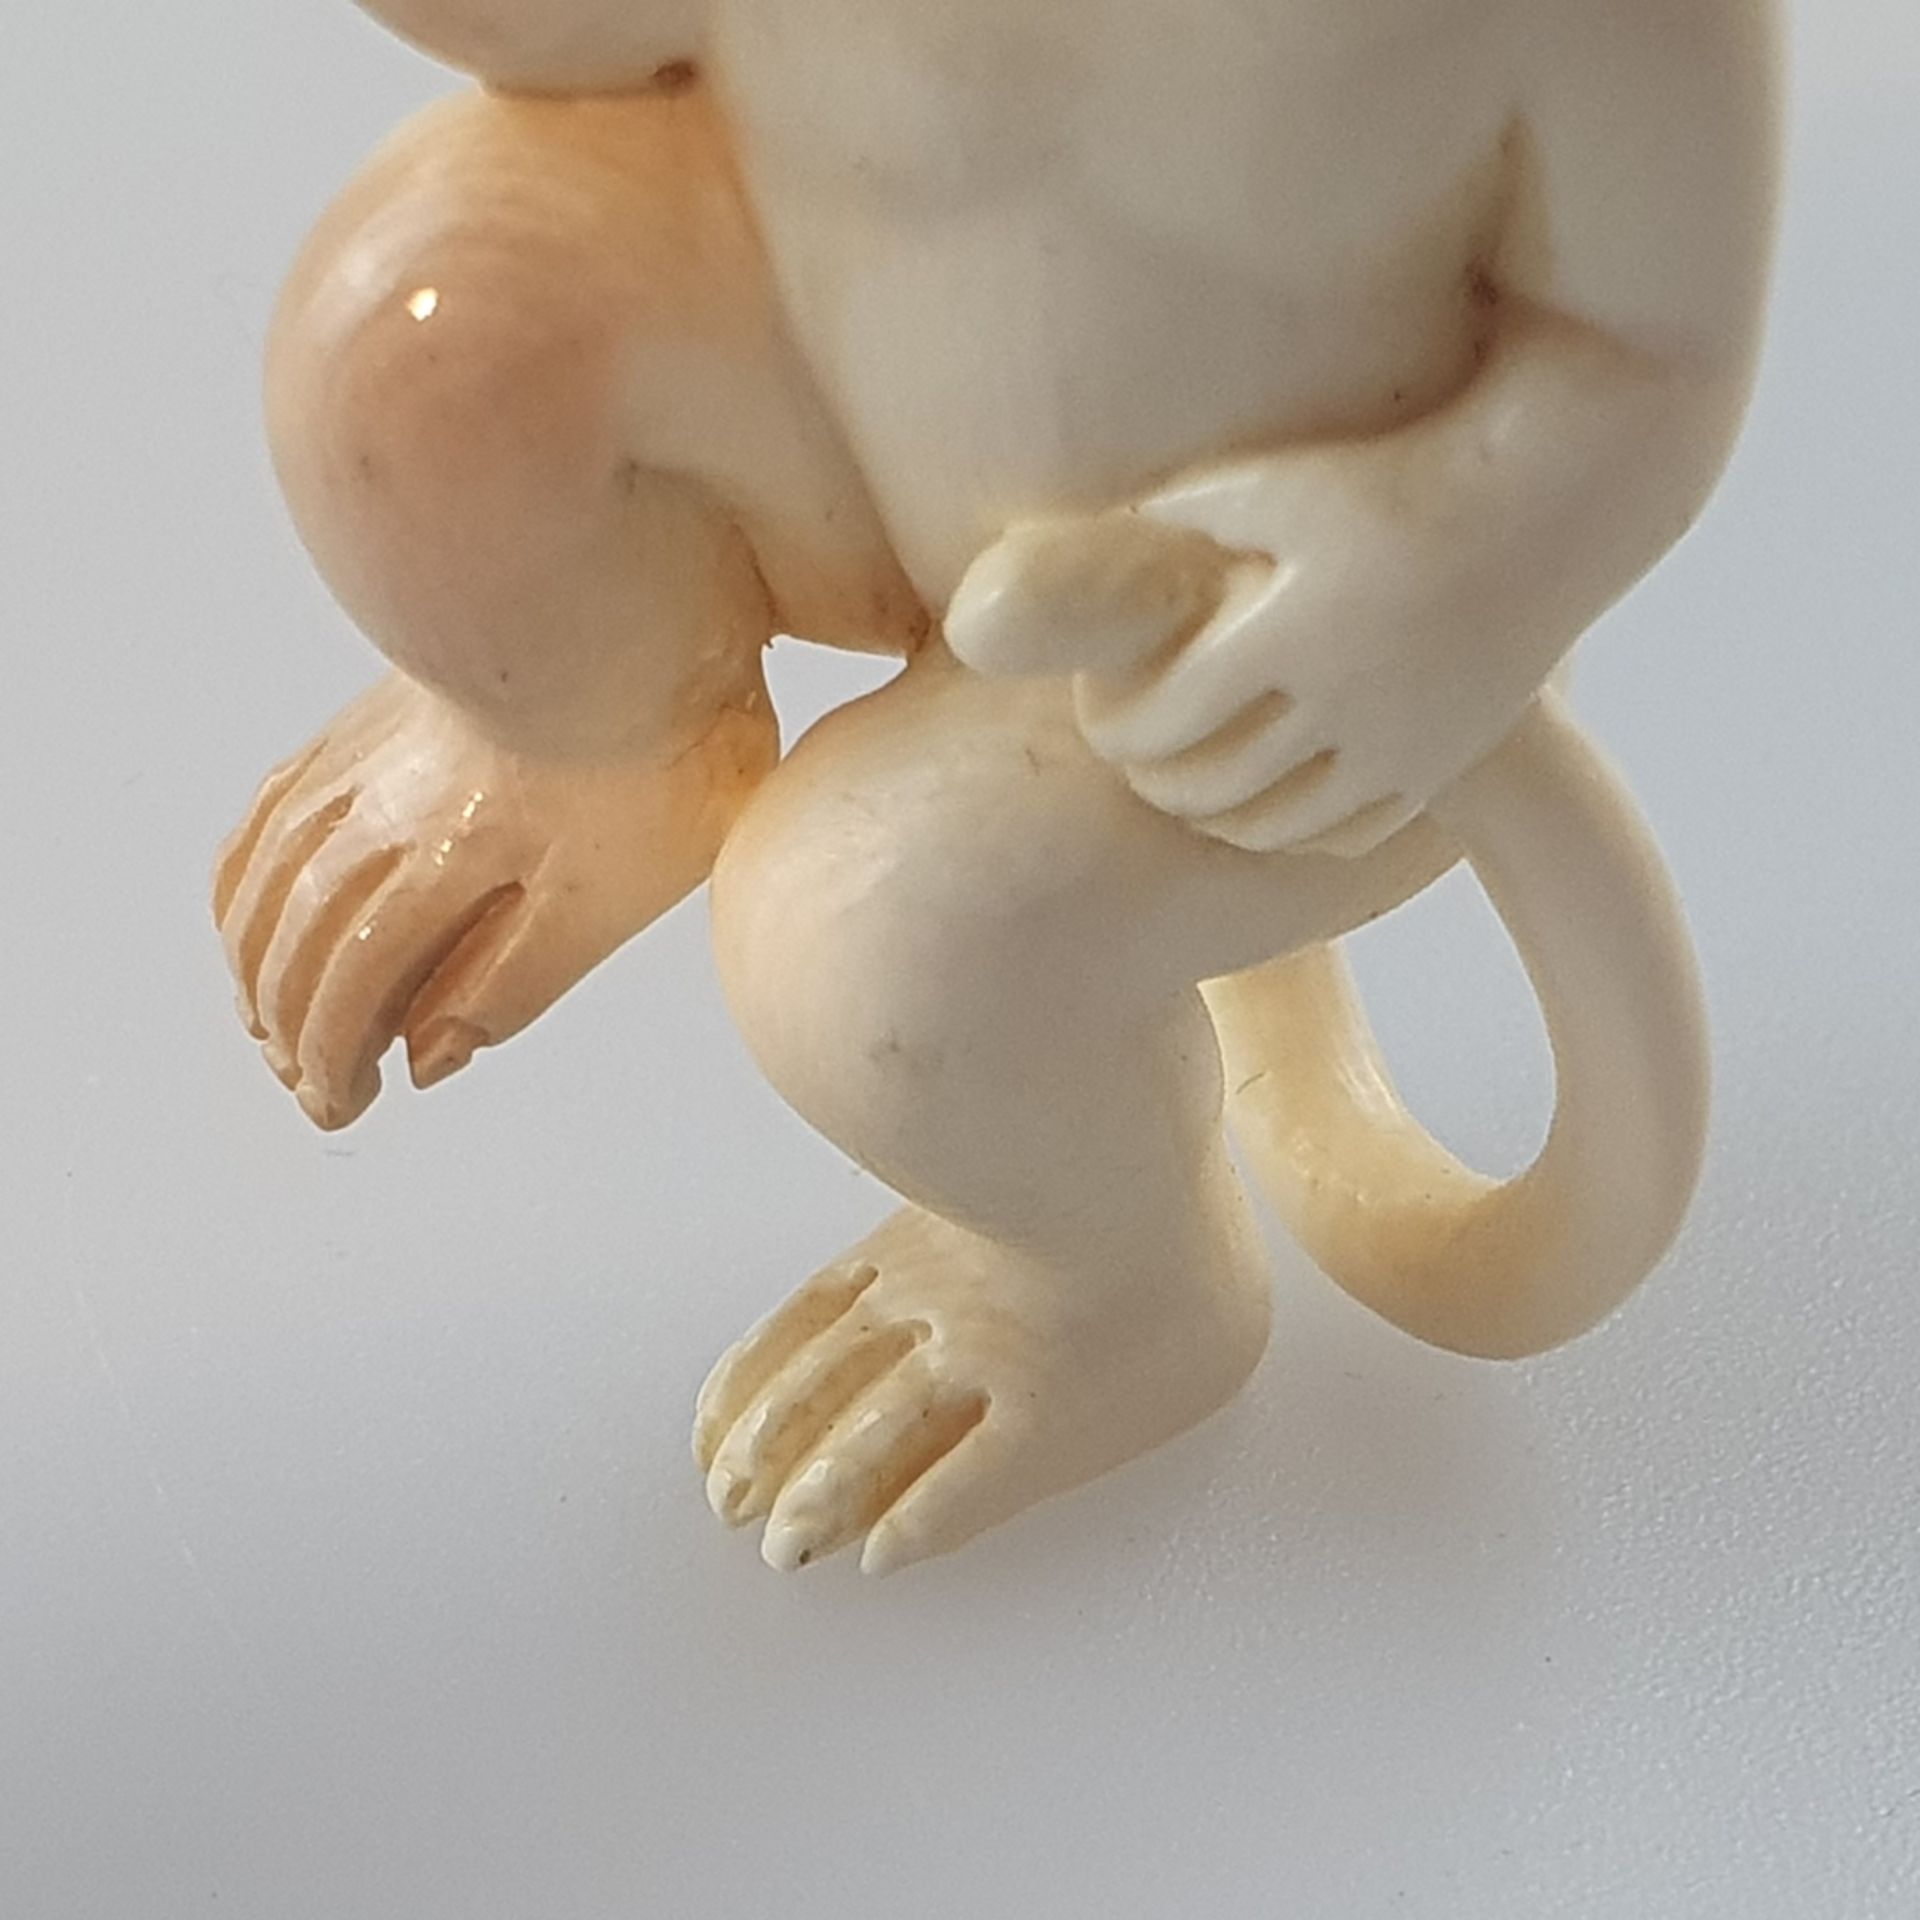 Katabori-Netsuke - Tanzender Affe, feine Elfenbein-Schnitzarbeit, dunkel eingelegte Augen, untersei - Bild 3 aus 6